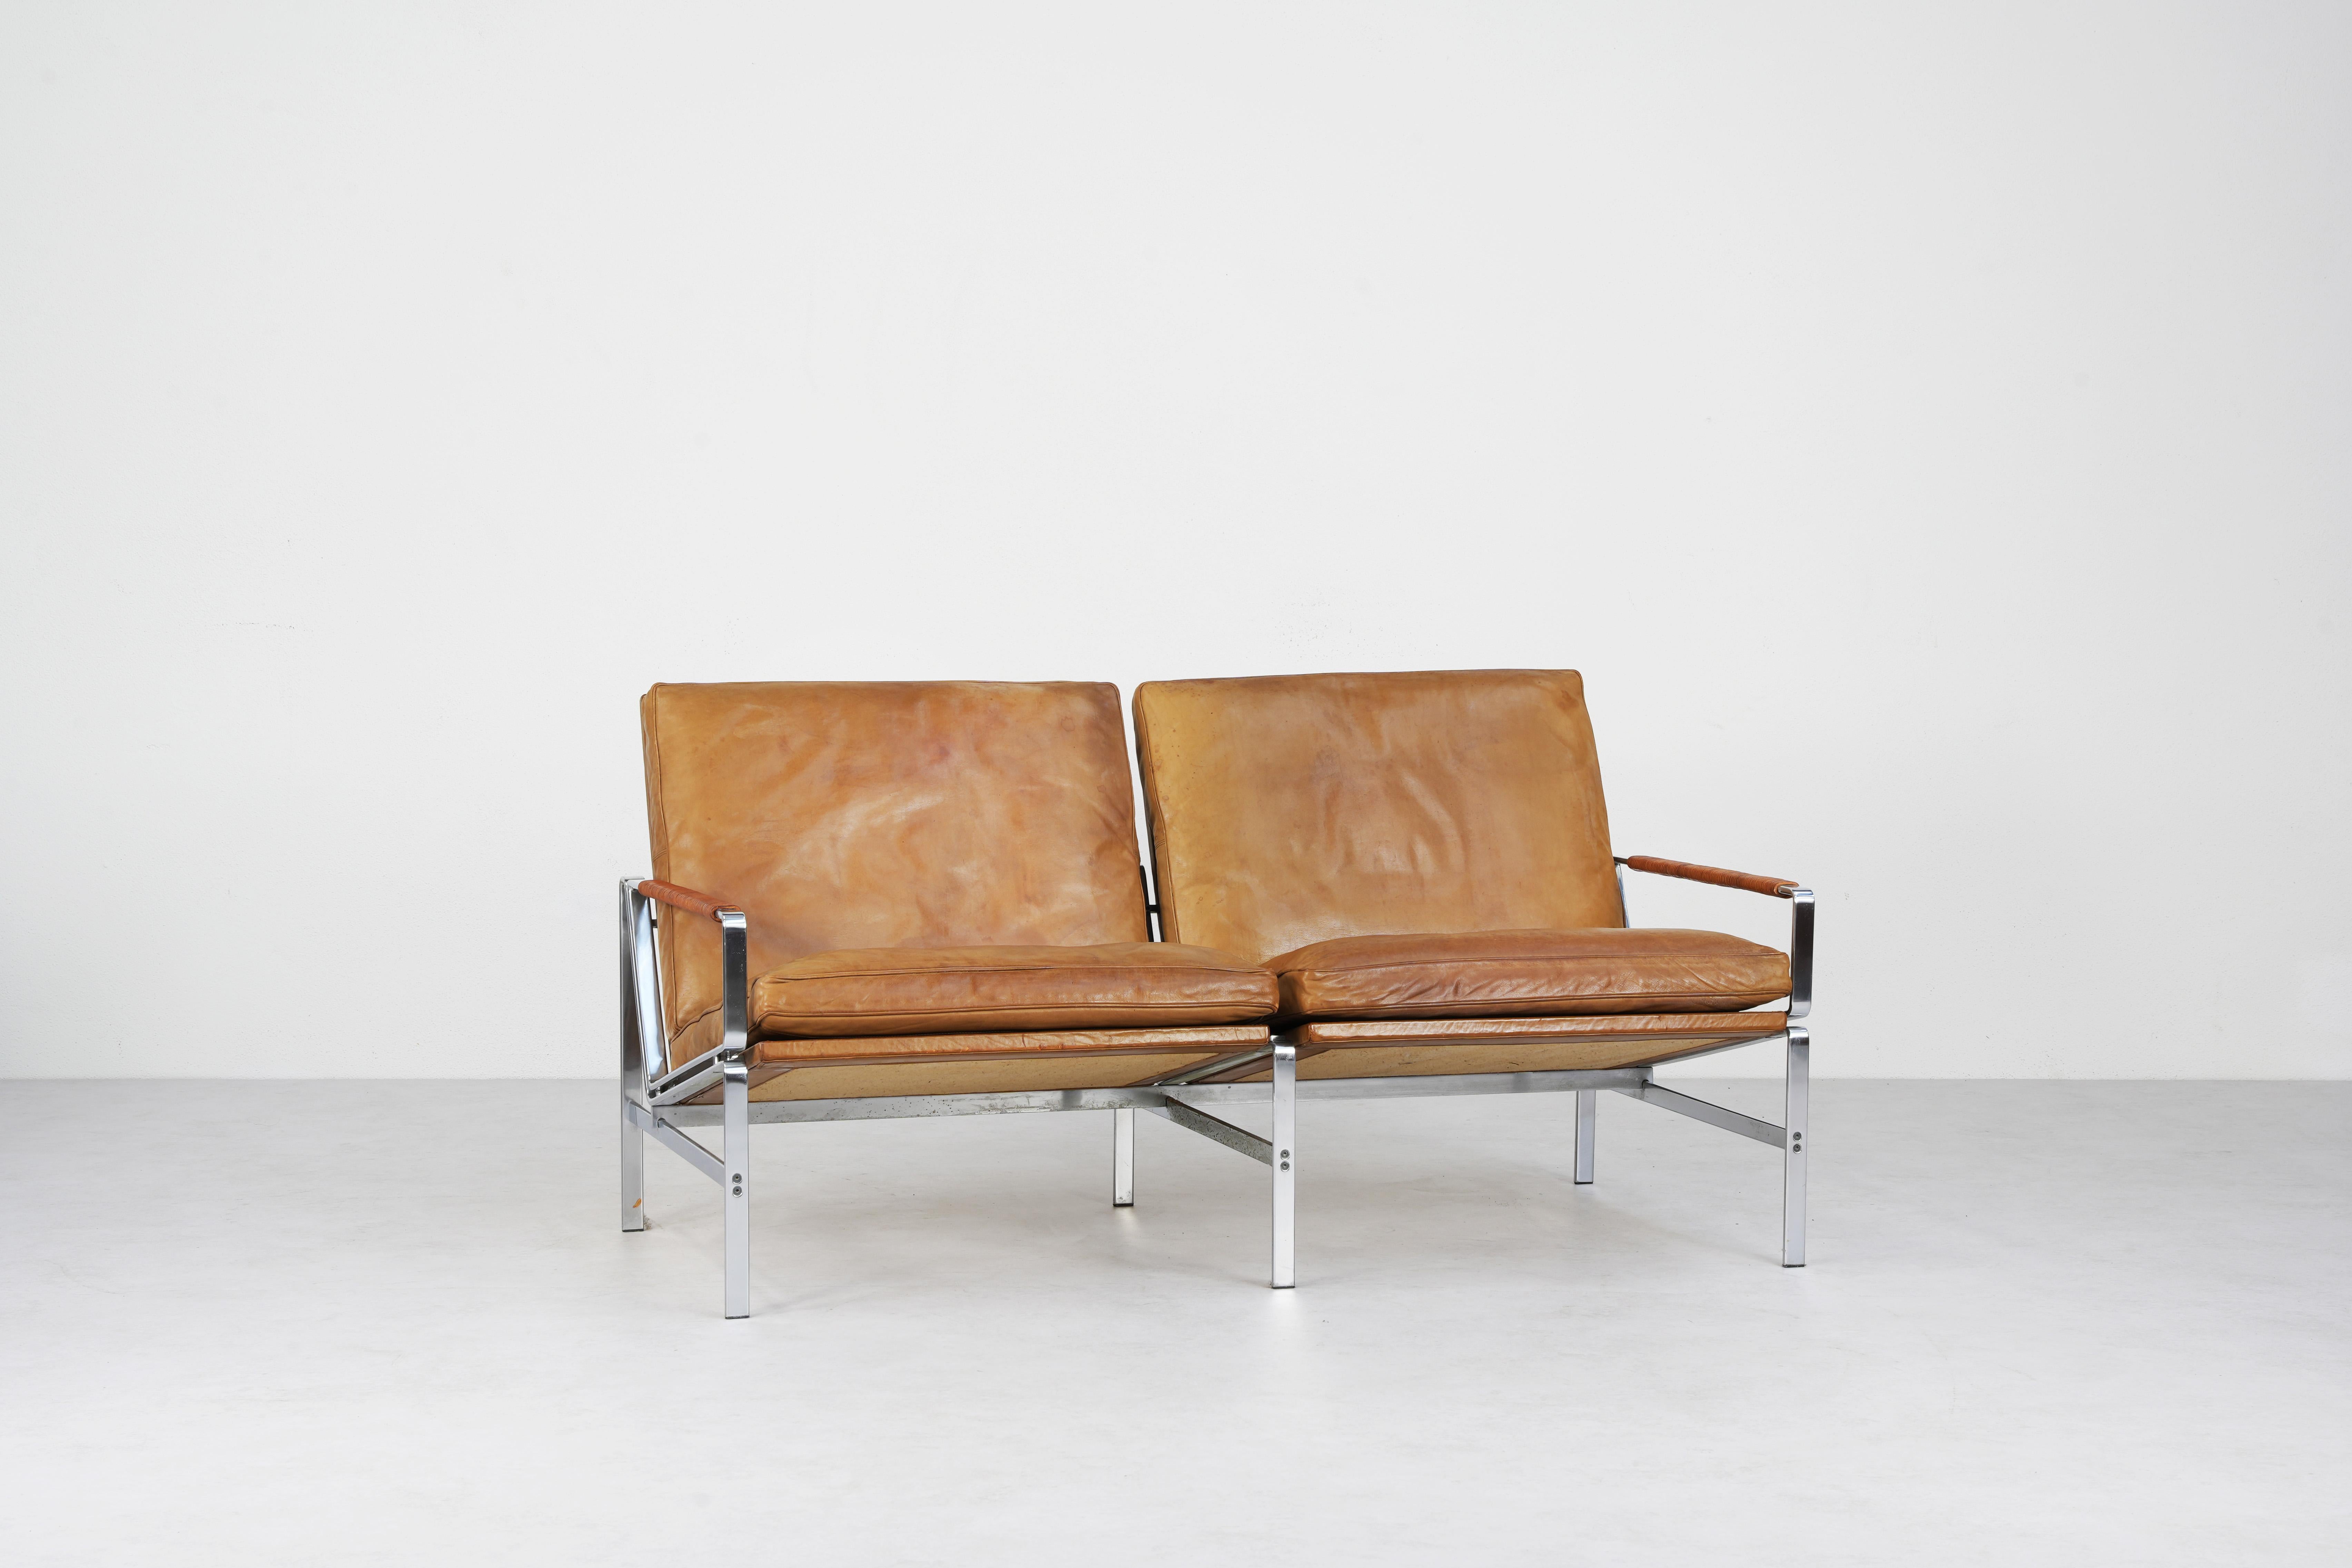 Magnifique canapé conçu par Preben Fabricius & Jørgen Kastholm et produit par Alfred Kill International, Allemagne 1968. 
Conçu avec l'élégance moderne du milieu du siècle, ce deux places allie sans effort la forme et la fonction. Le canapé se